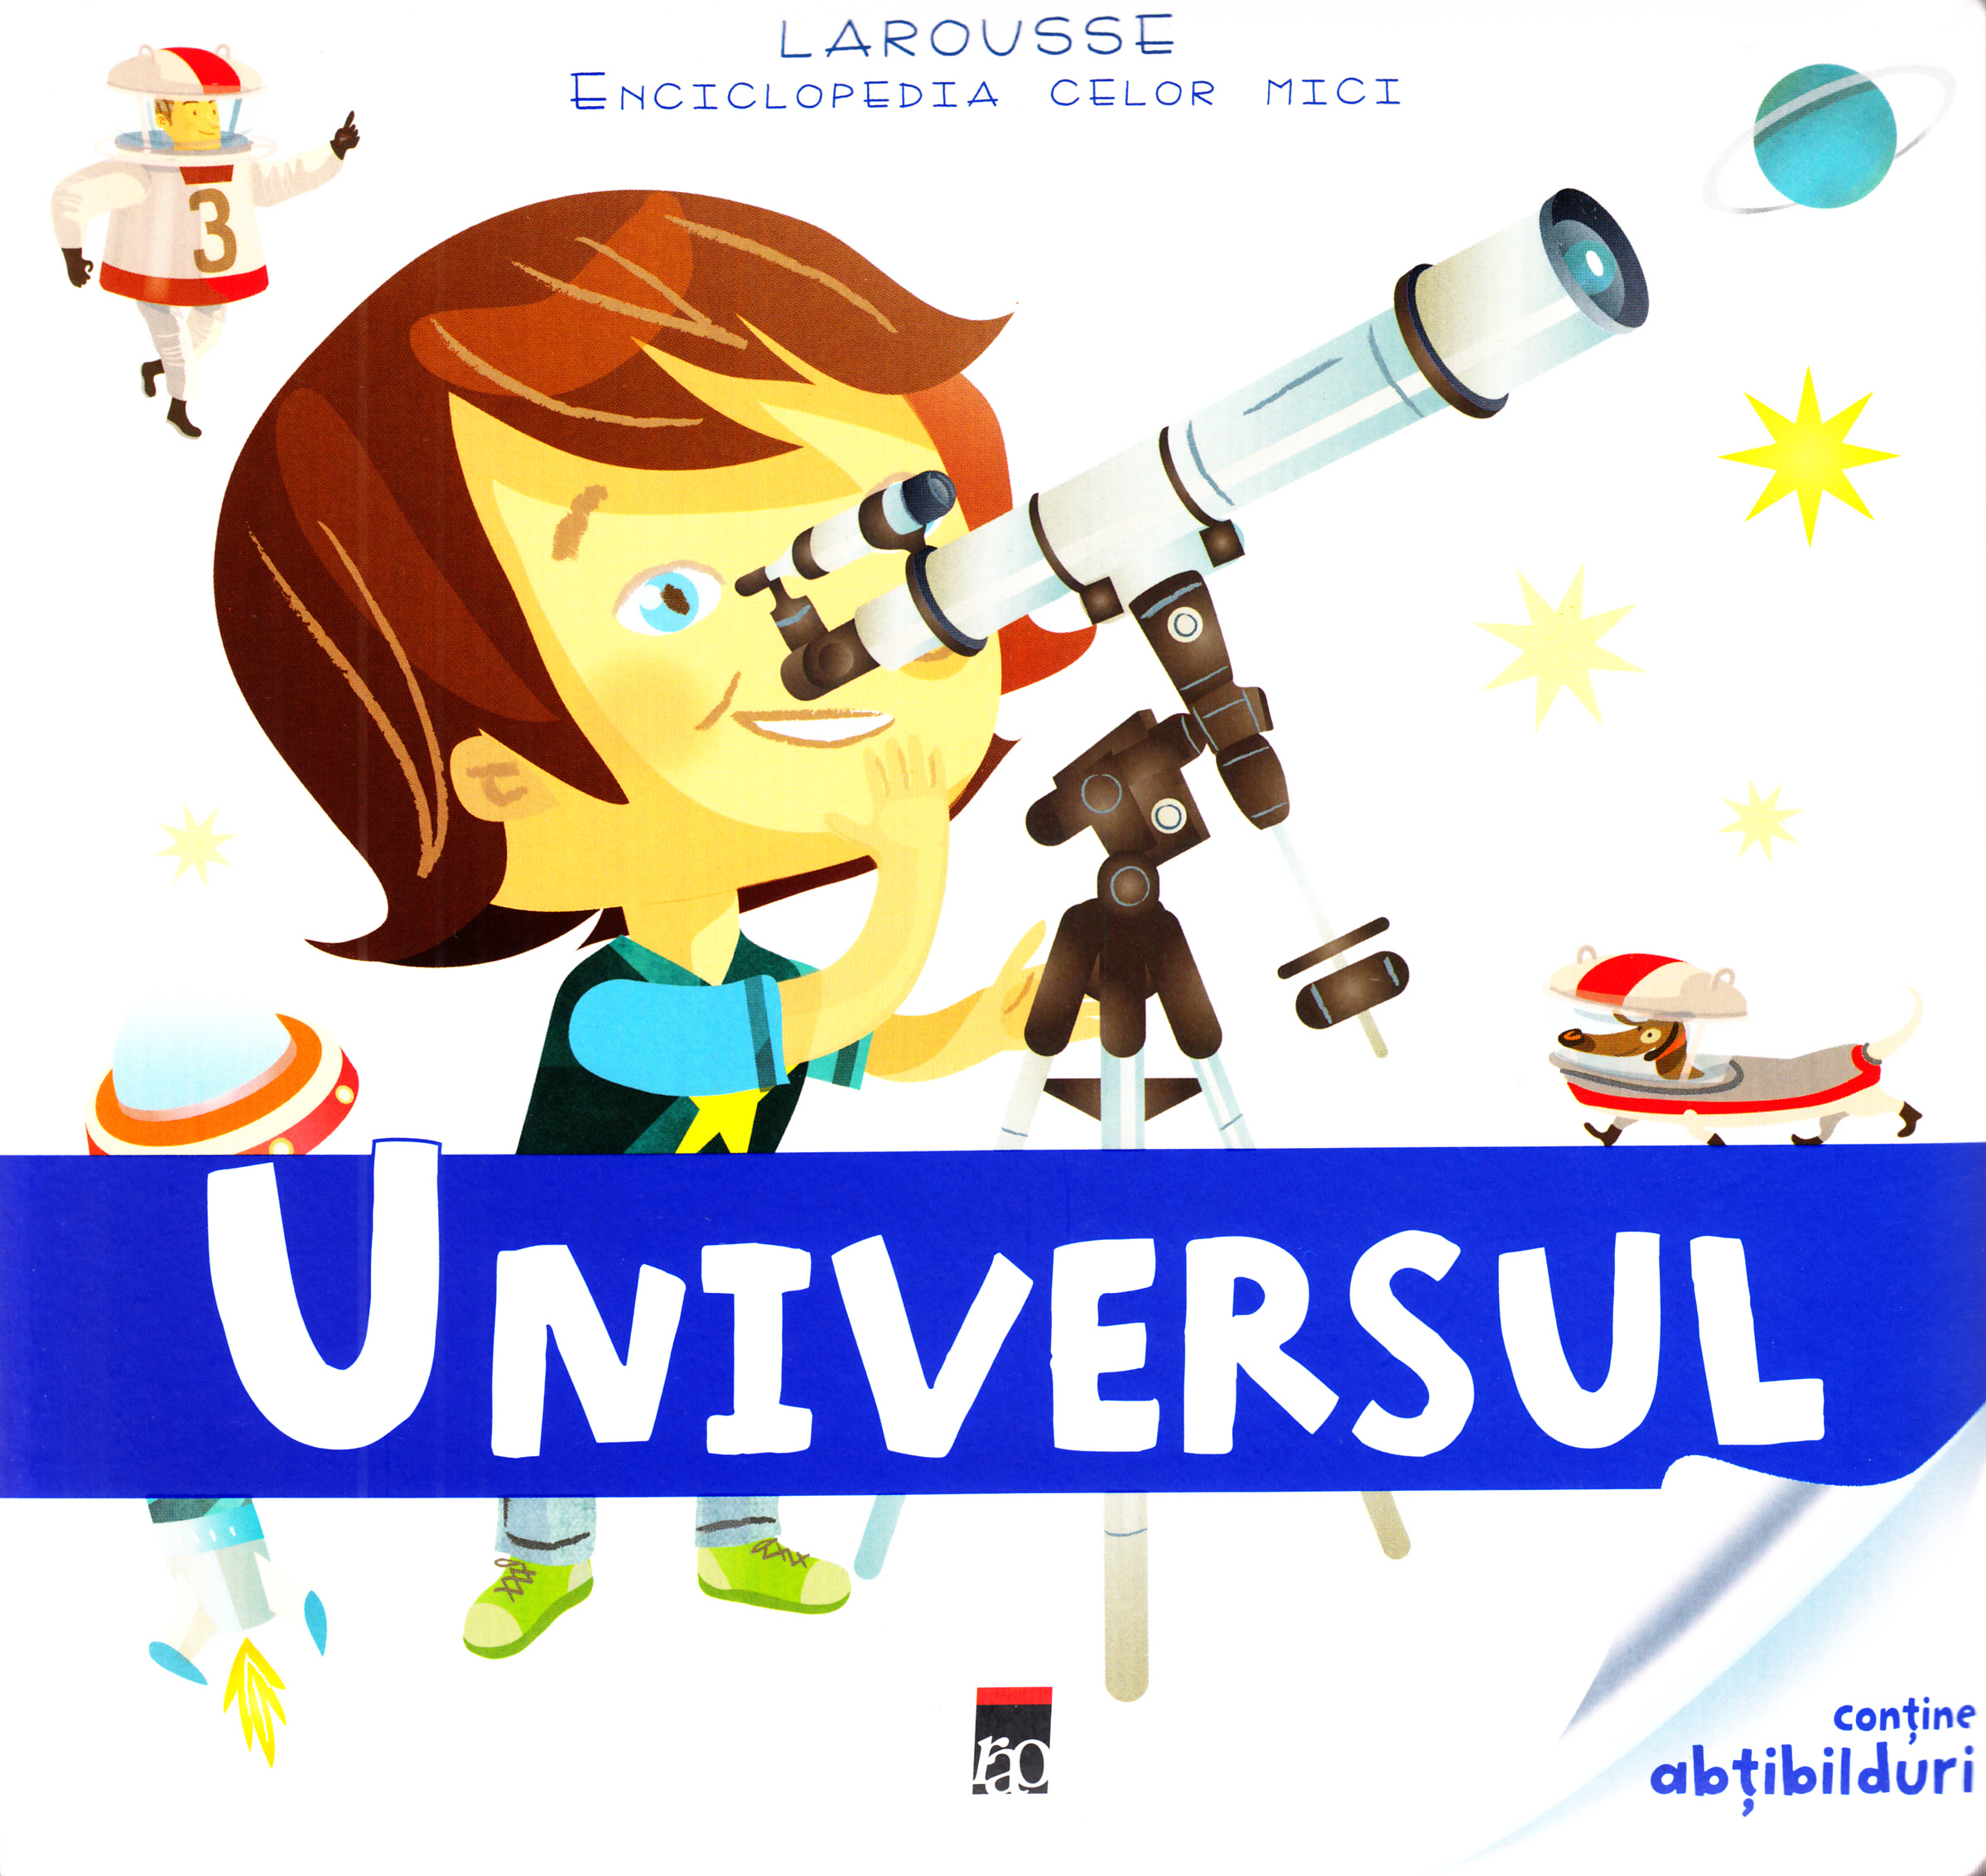 Enciclopedia celor mici - Universul (Larousse)